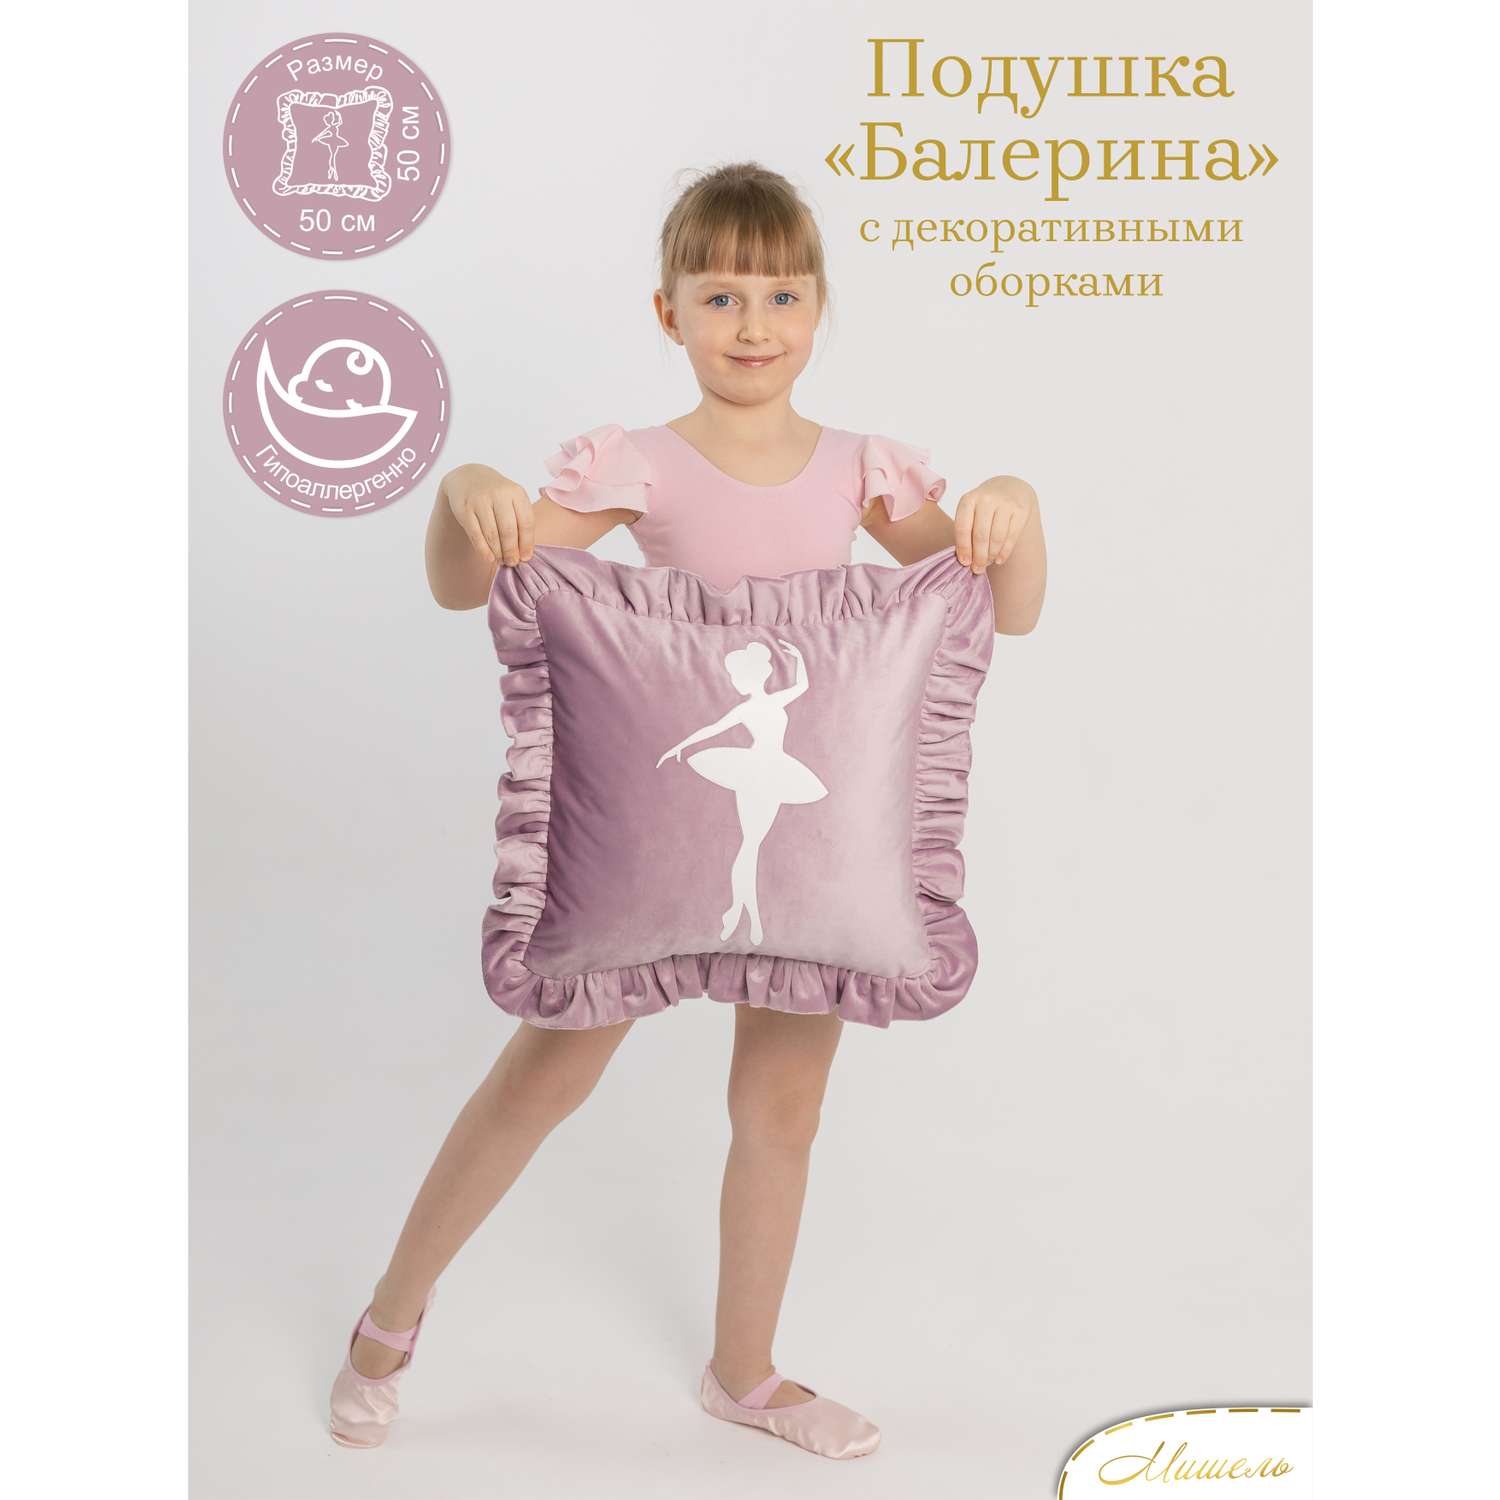 Подушка декоративная детская Мишель Балерина цвет сиреневый - фото 1